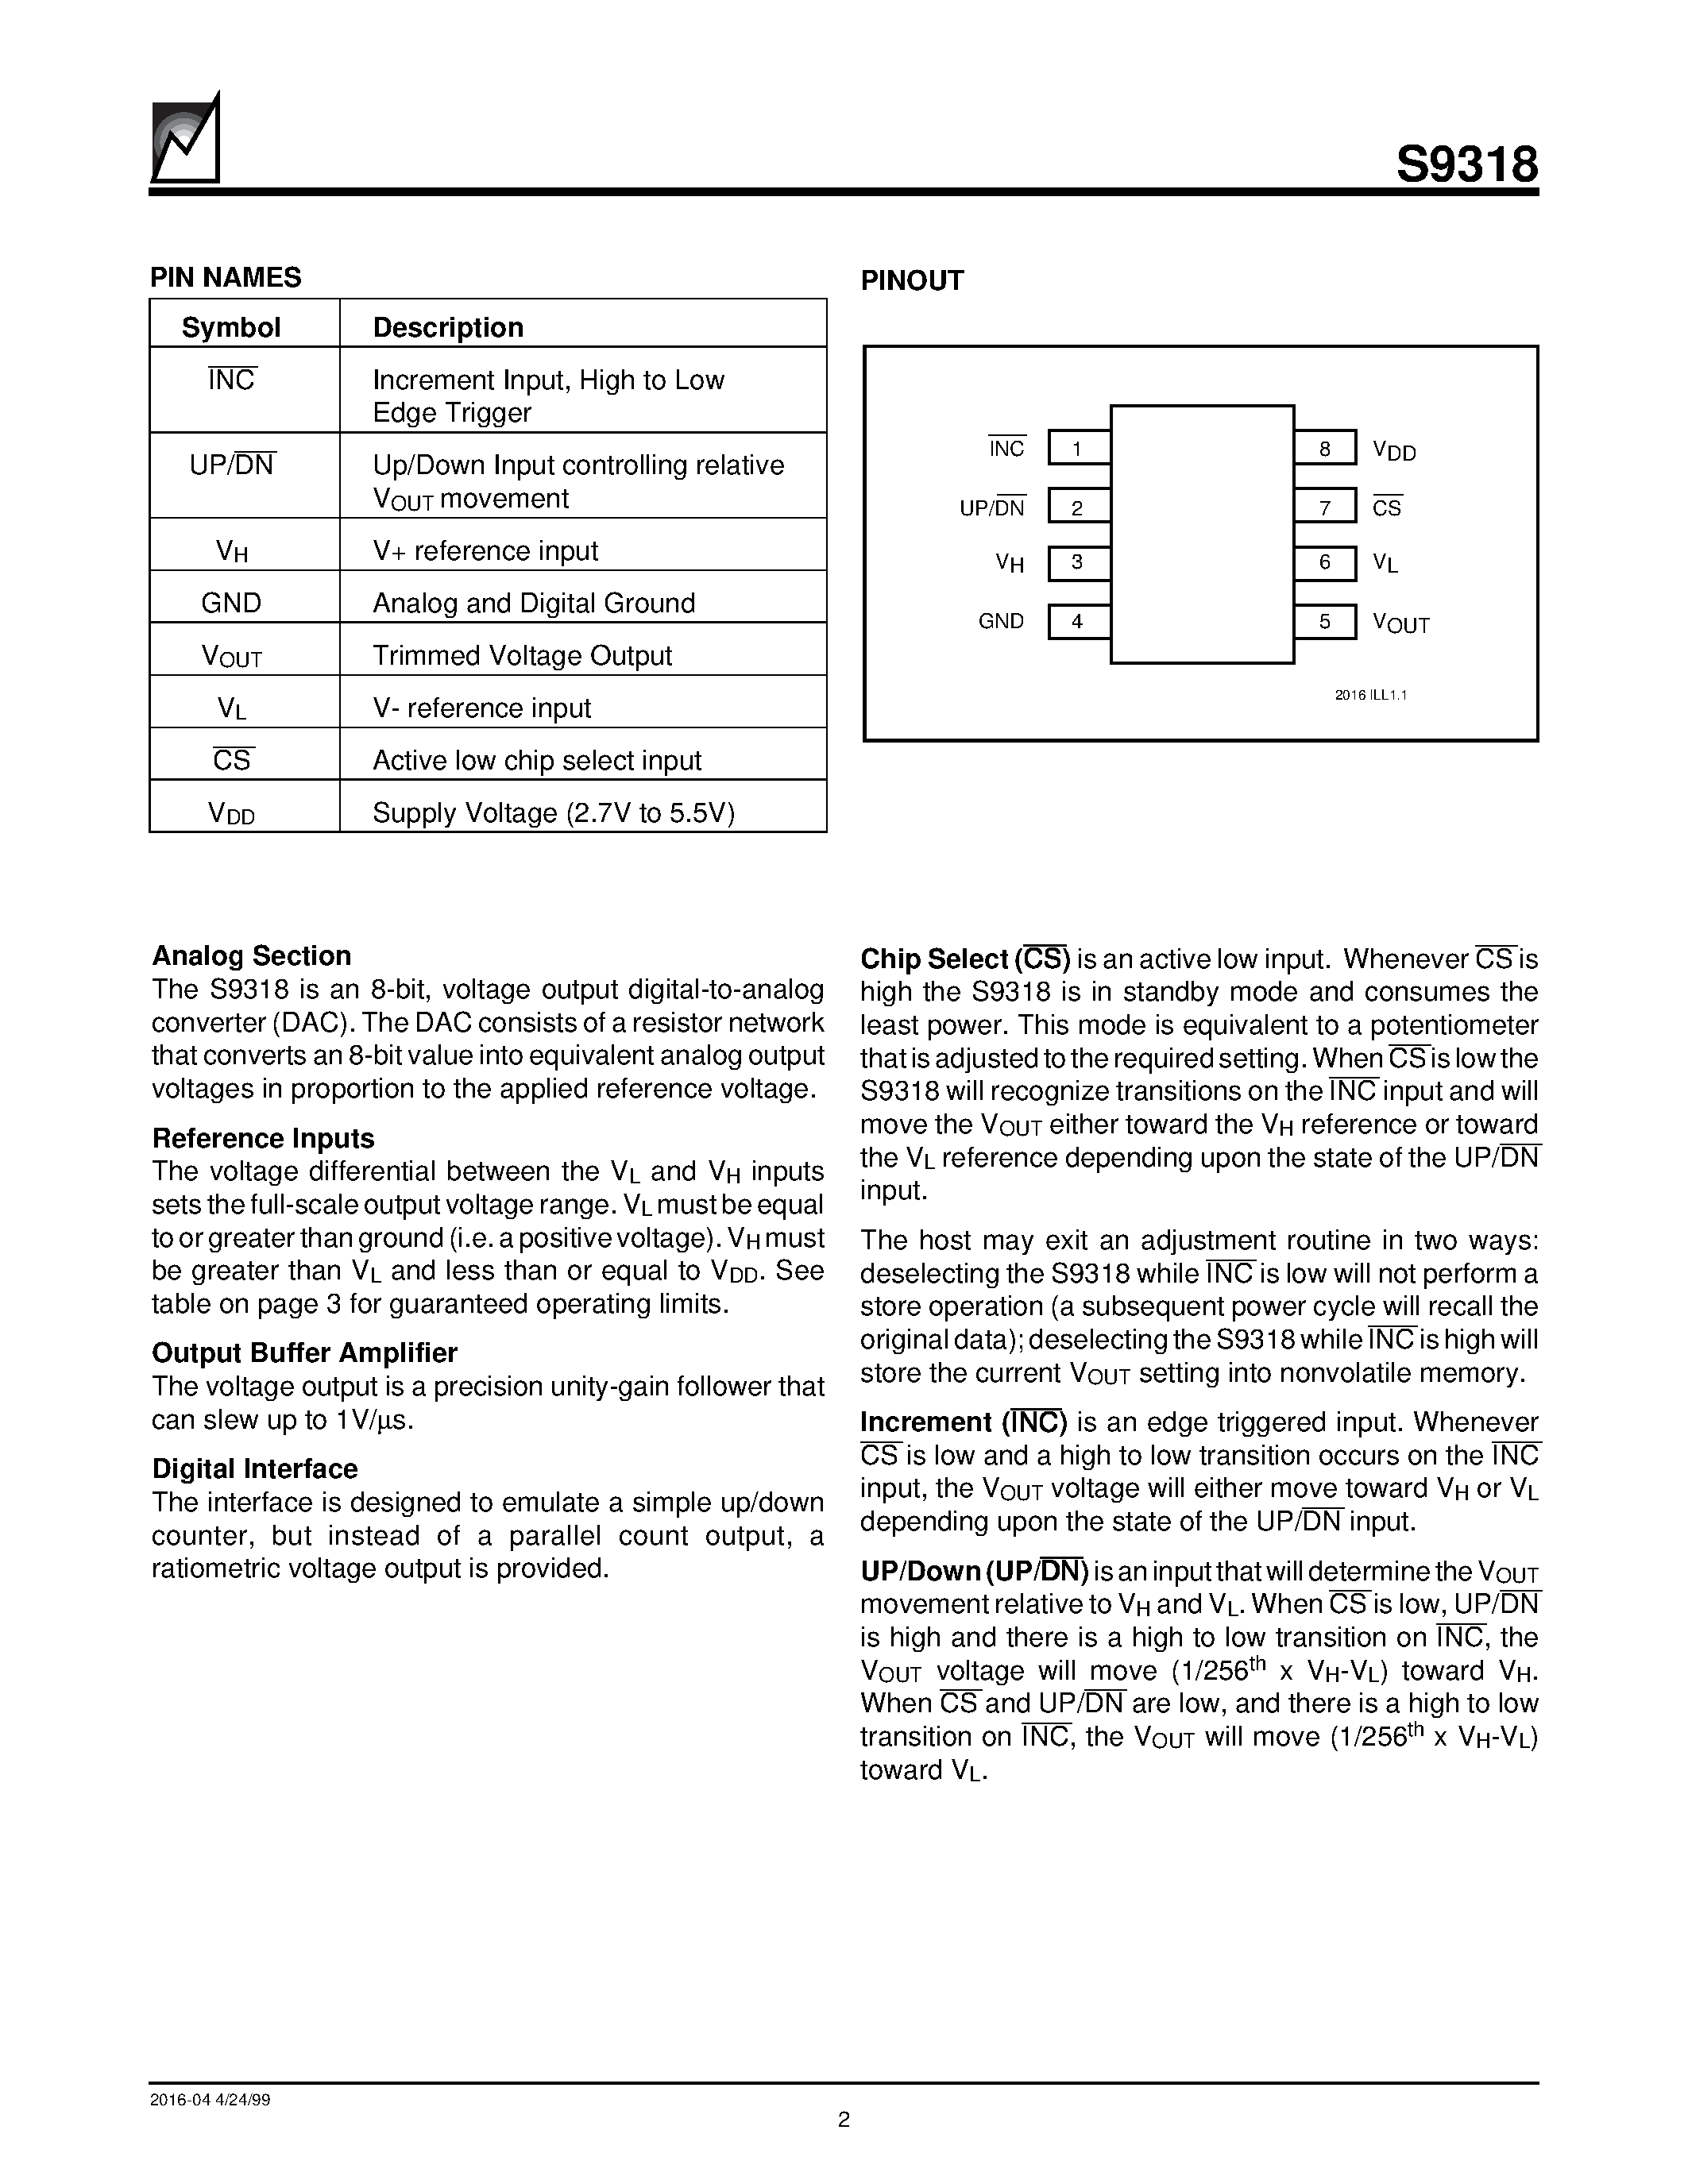 Даташит S9318S - Nonvolatile DACPOT Electronic Potentiometer With Up/Down Counter Interface страница 2